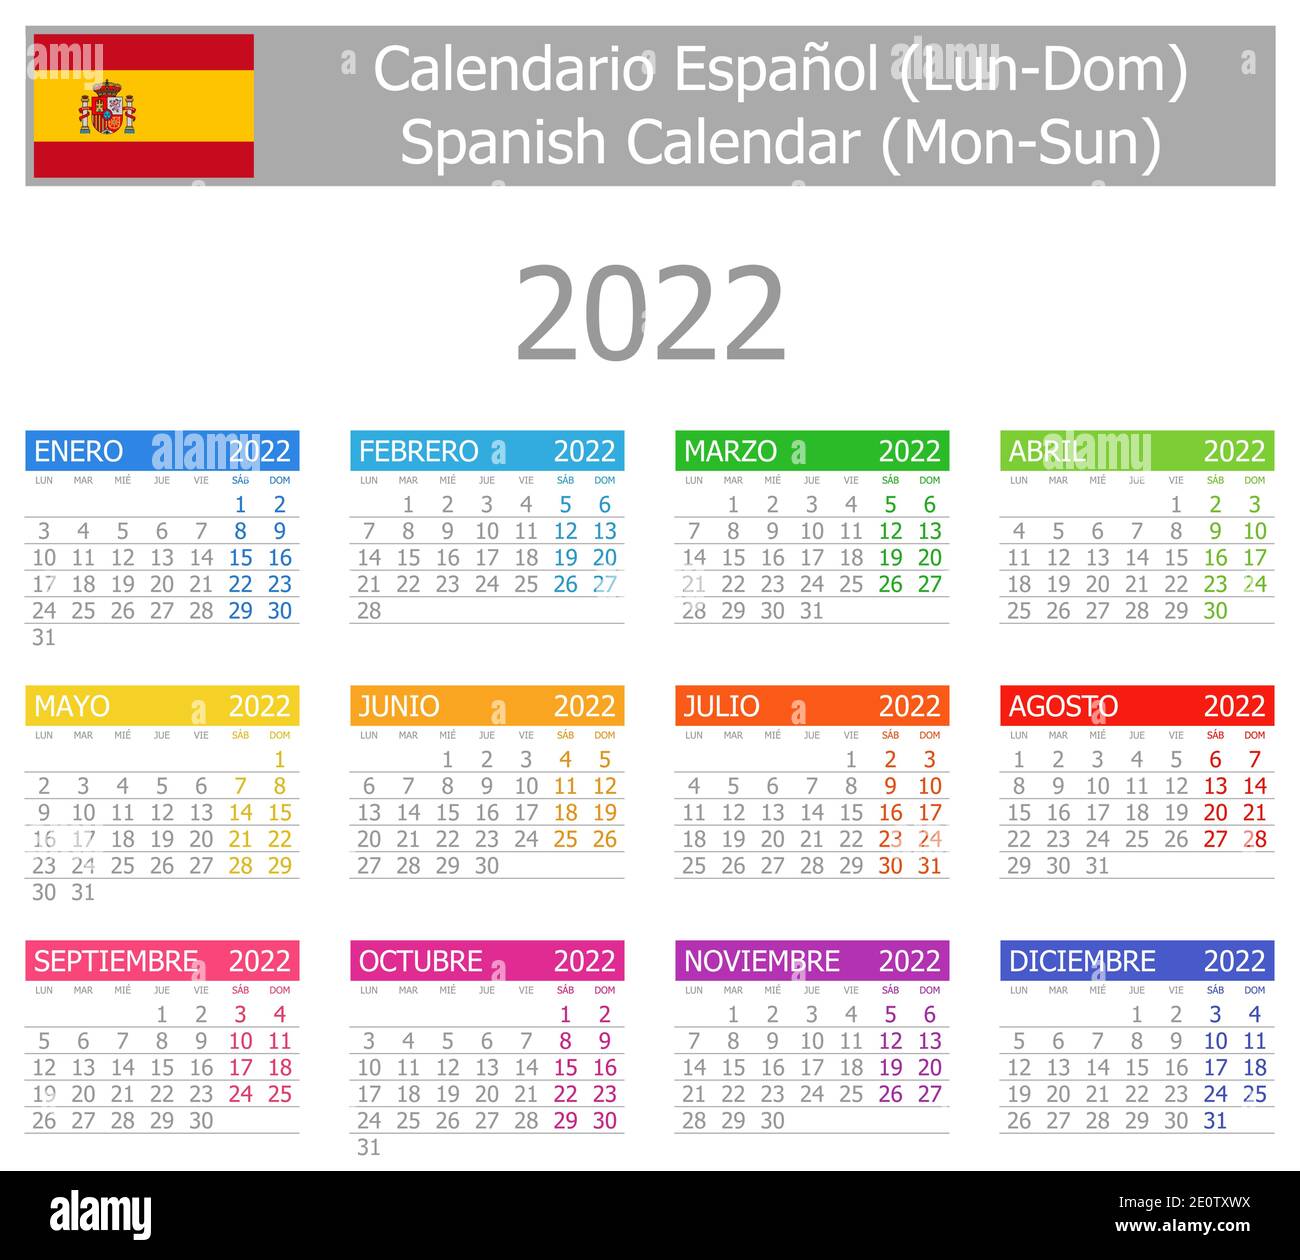 Calendario del 2022 en español